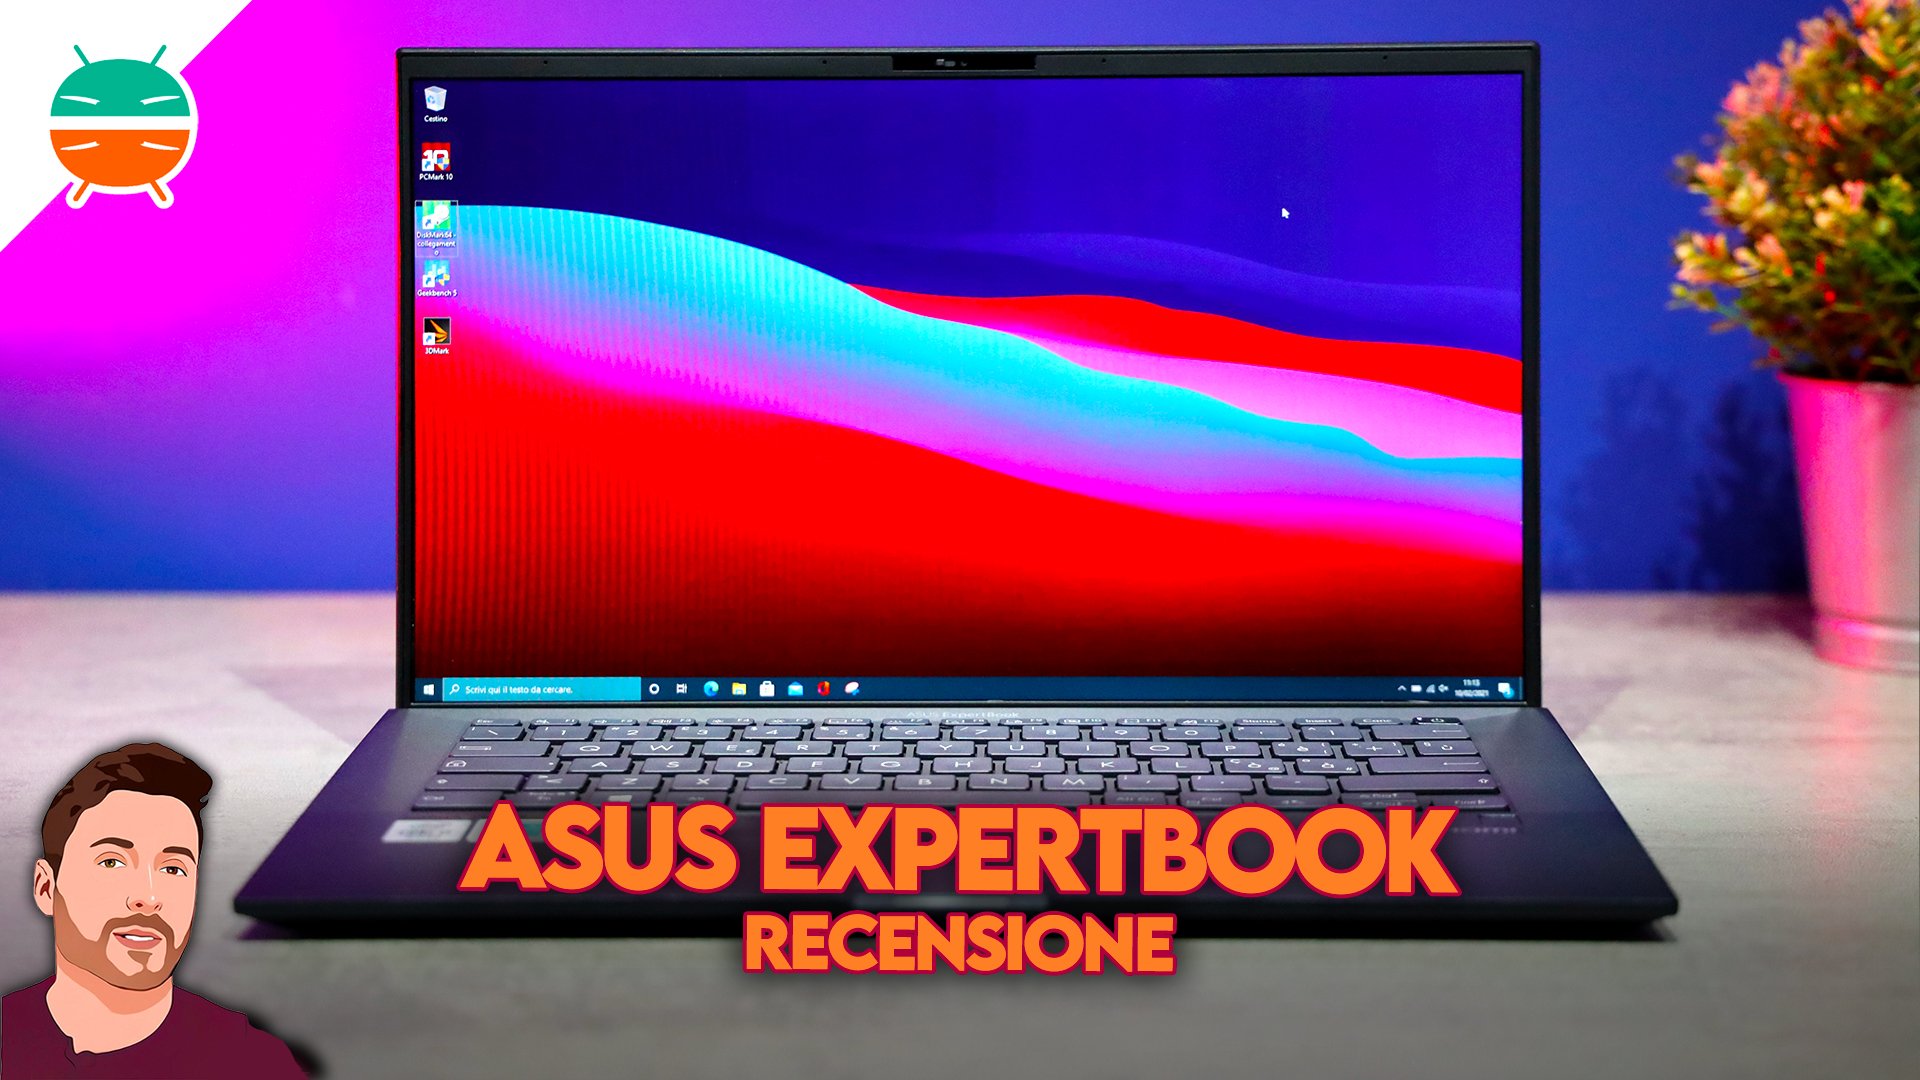 Обзор Asus ExpertBook: дизайн, материалы, производительность, аккумулятор и  цена - GizChina.it